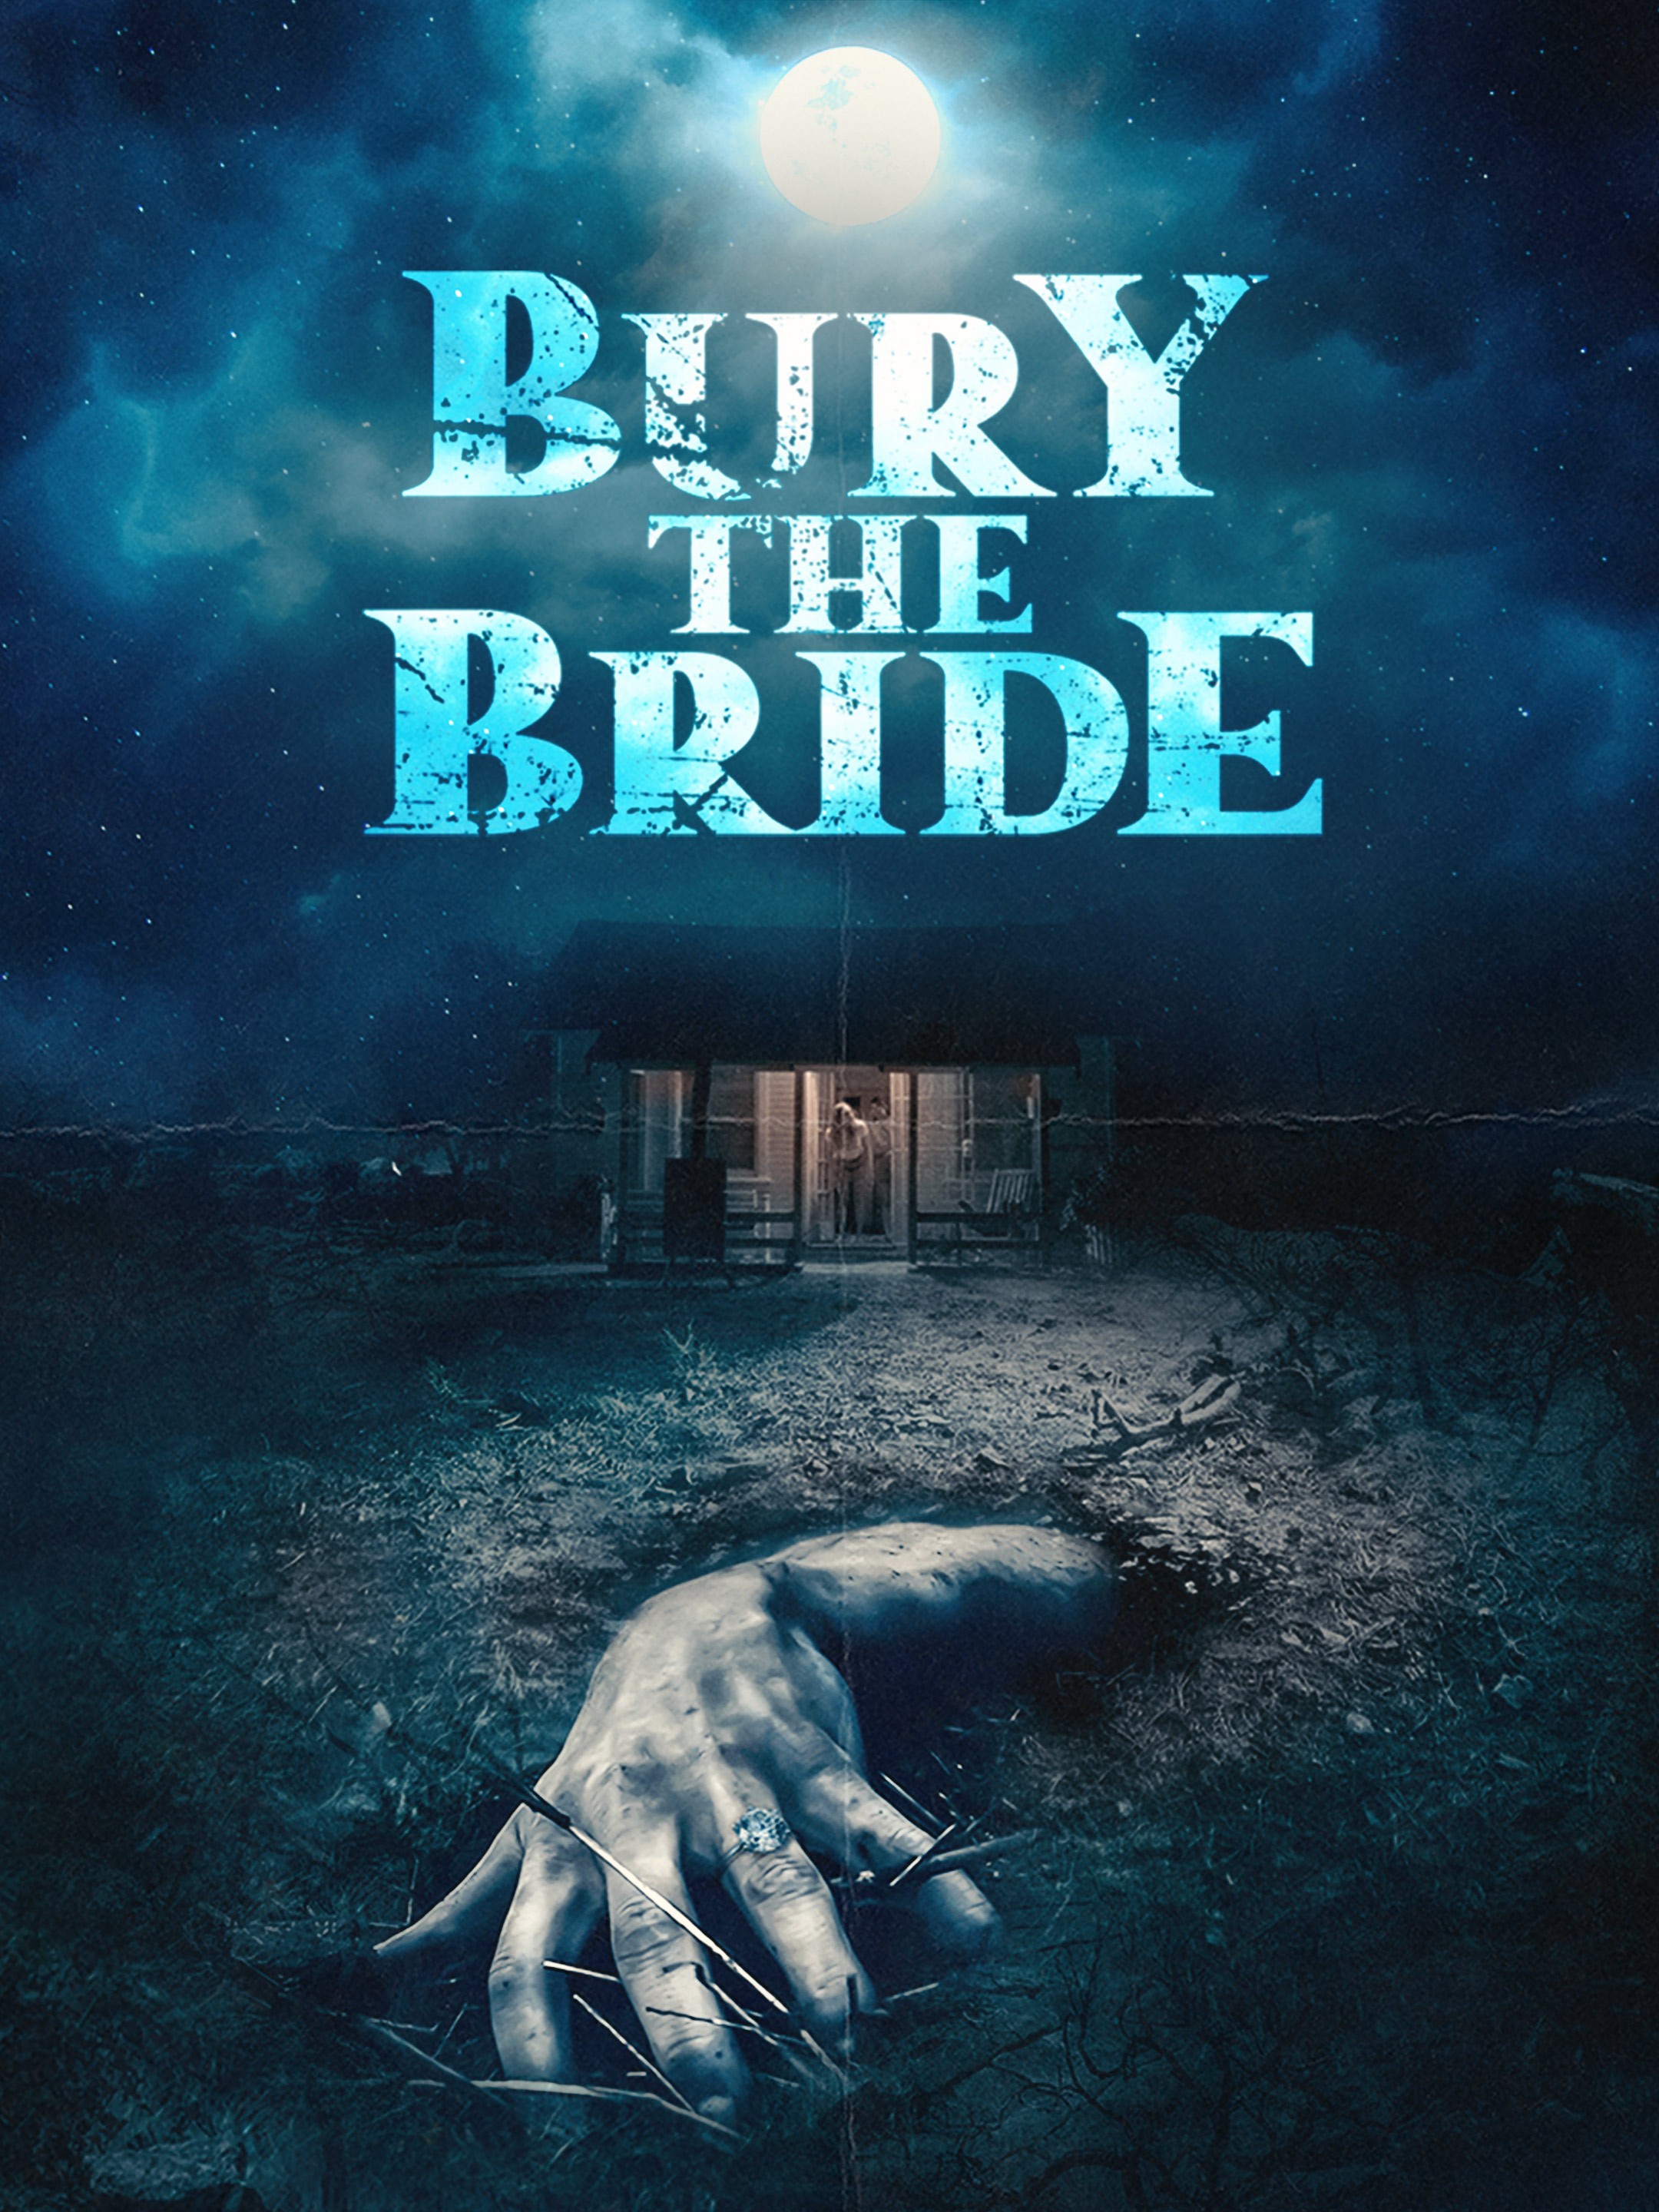 The Bride (Film) - TV Tropes